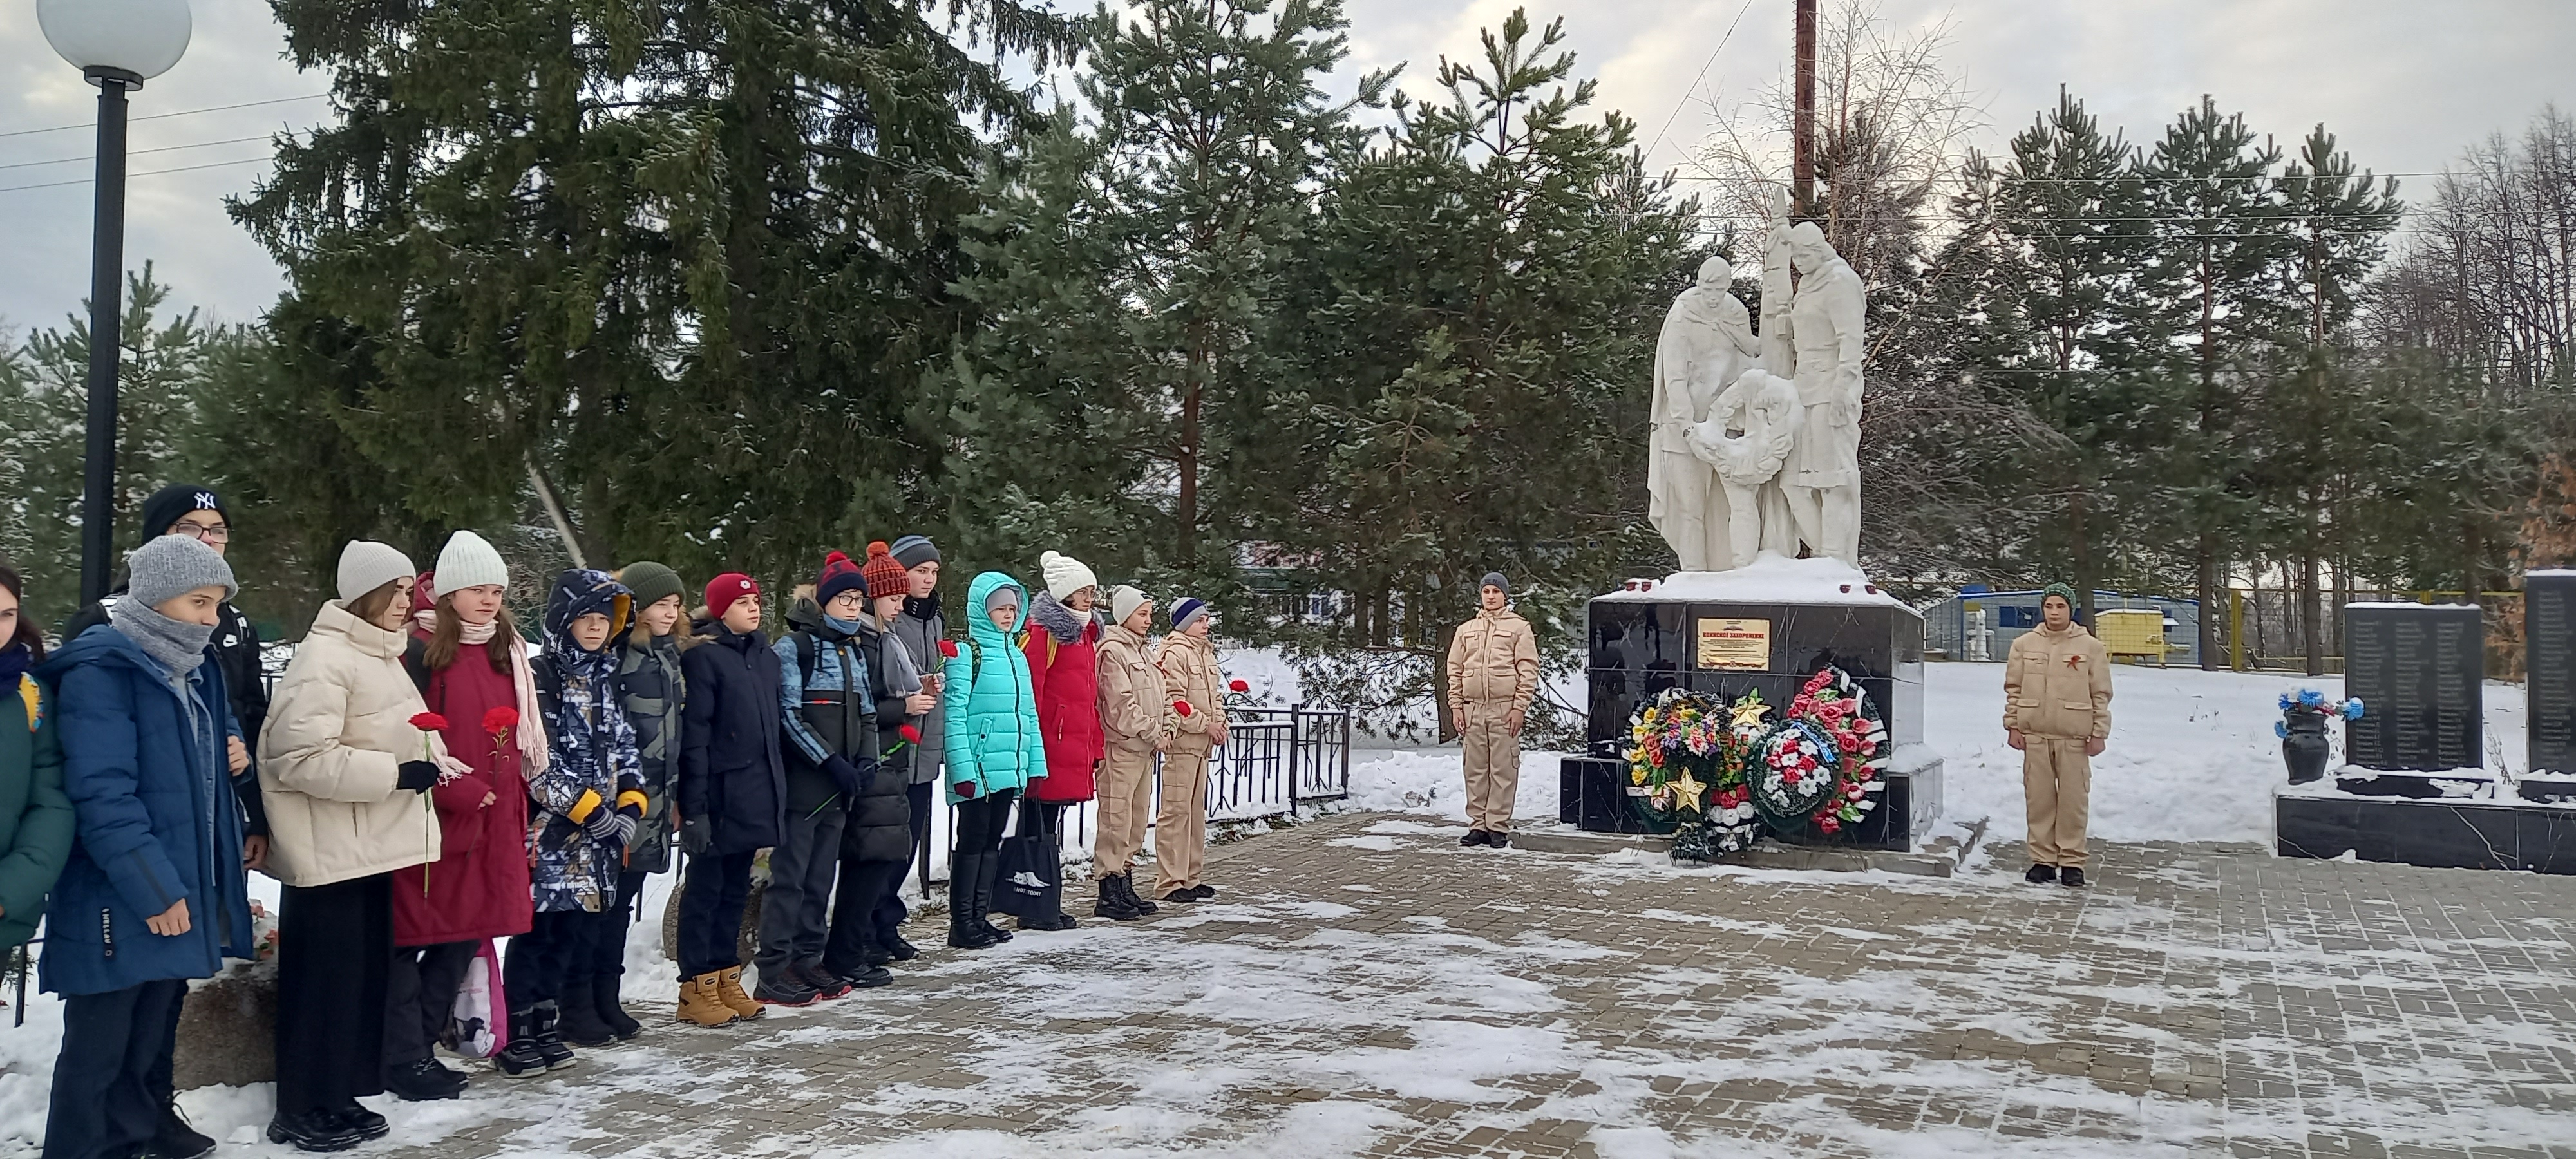 Памятная дата 3 декабря – дань уважения бессмертному подвигу павших защитников Отечества, чьи имена остались неизвестными.